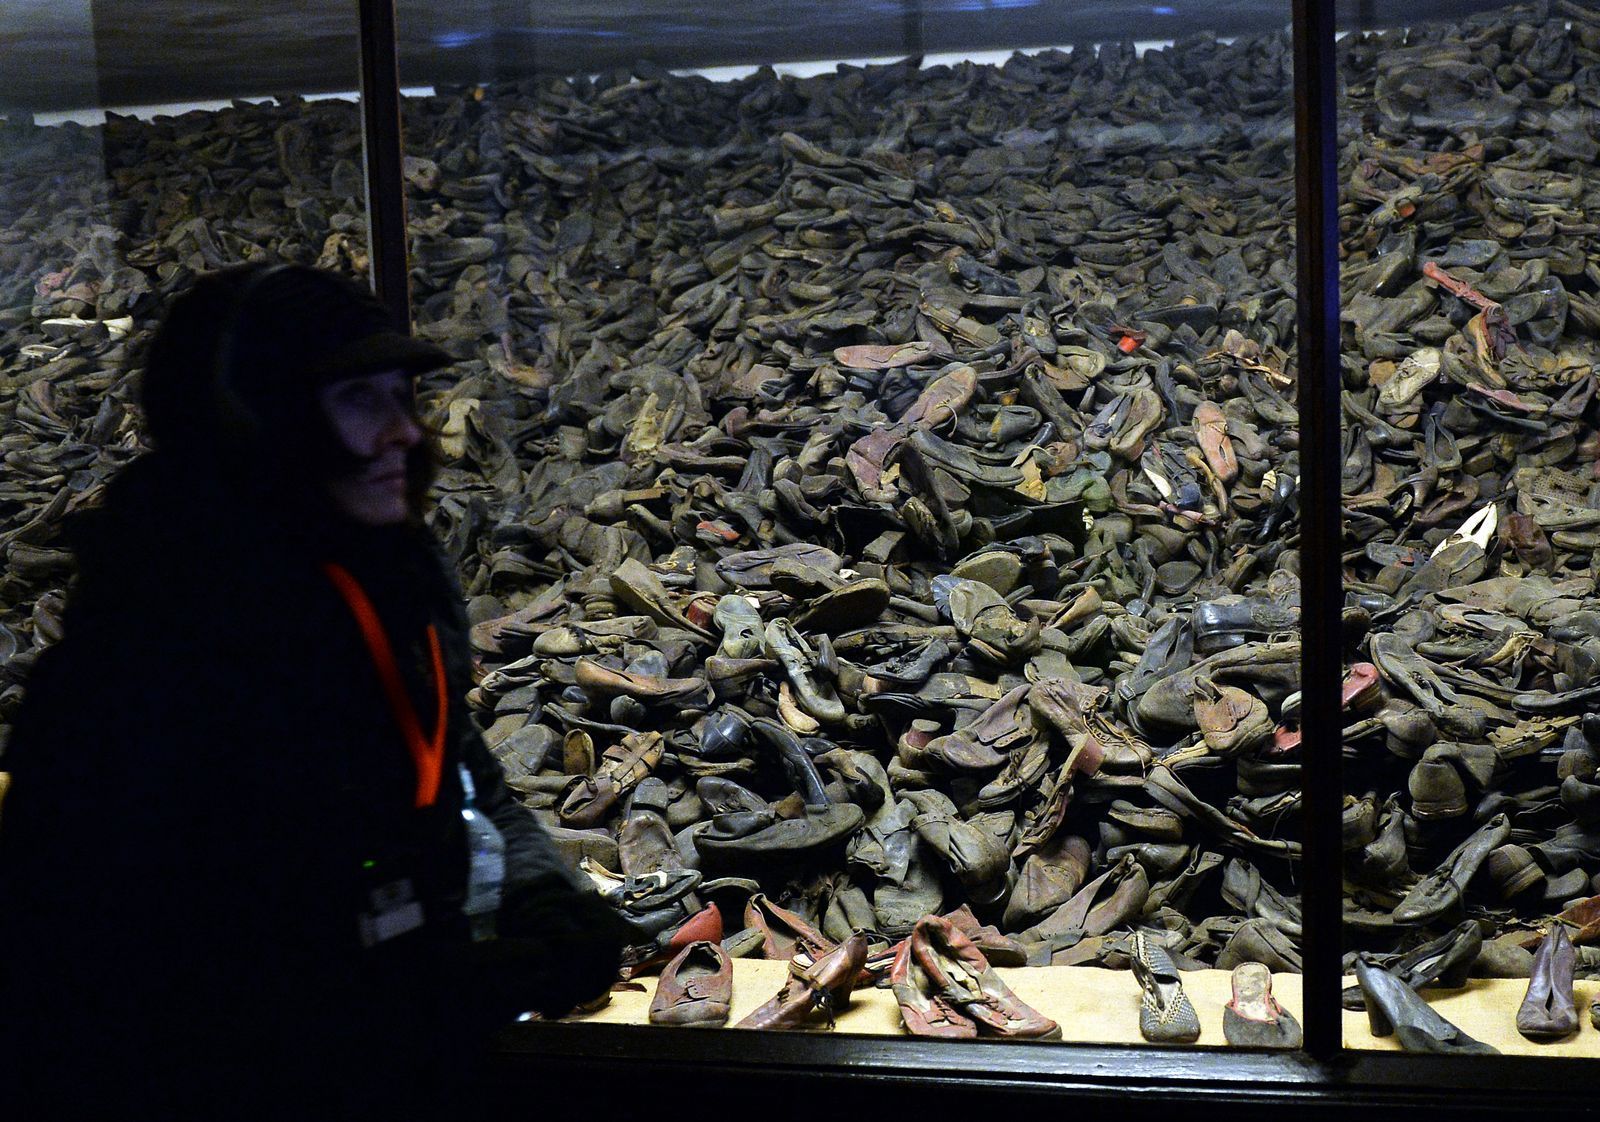 รองเท้าของชาวยิวที่ถูกสังหารโดยกองทัพนาซีในค่ายเอาชวิตซ์.jpg